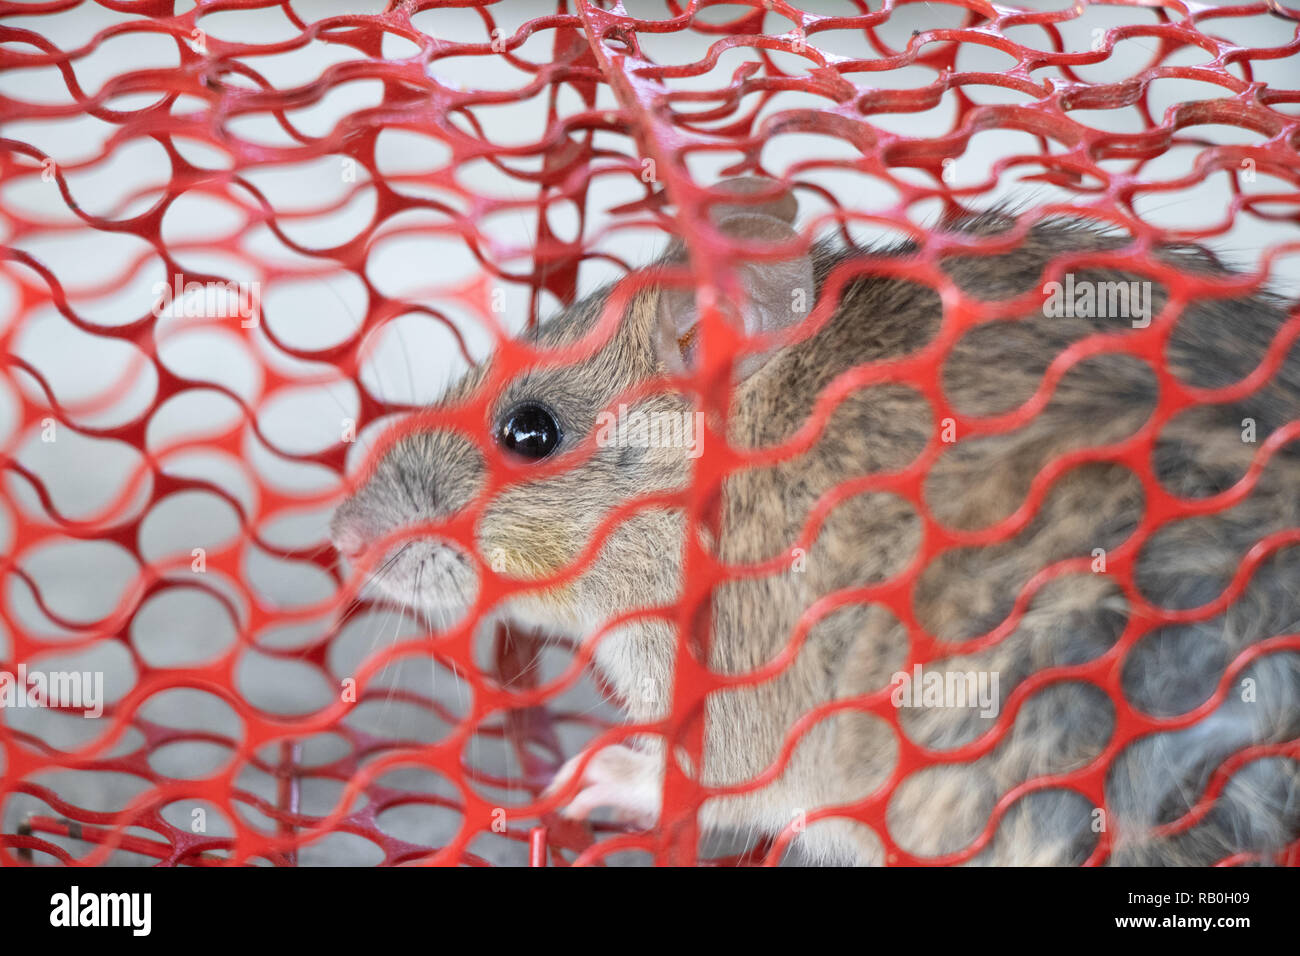 Ratón o rata atrapada en una jaula roja Foto de stock